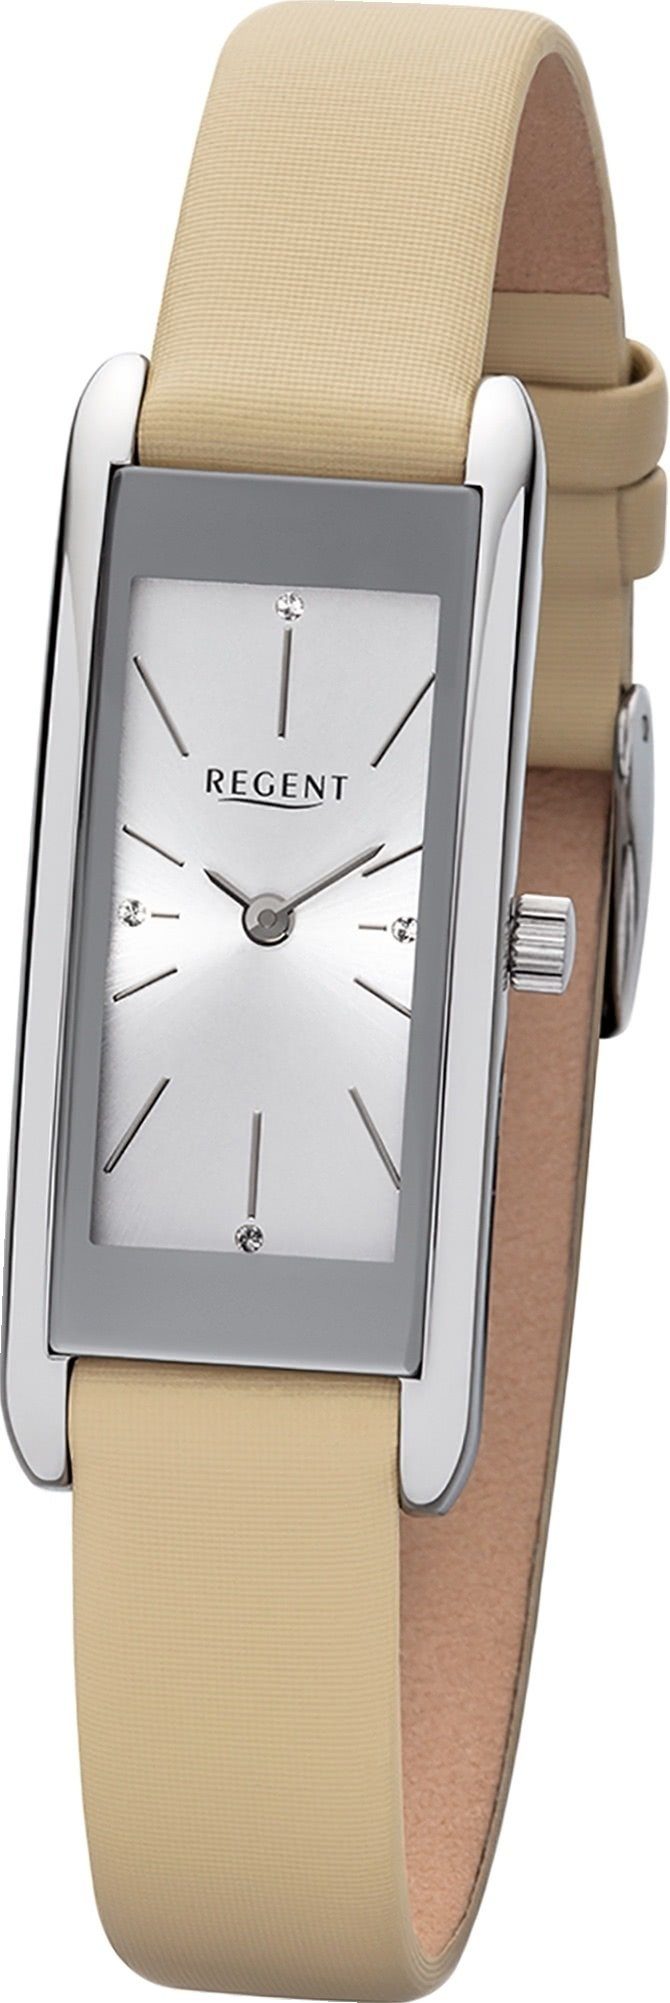 Regent Quarzuhr »D2URBA458 Regent Leder Damen Uhr BA-458 Analog«, Damenuhr  mit Lederarmband, eckiges Gehäuse, groß (ca. 41mm), Elegant-Style online  kaufen | OTTO